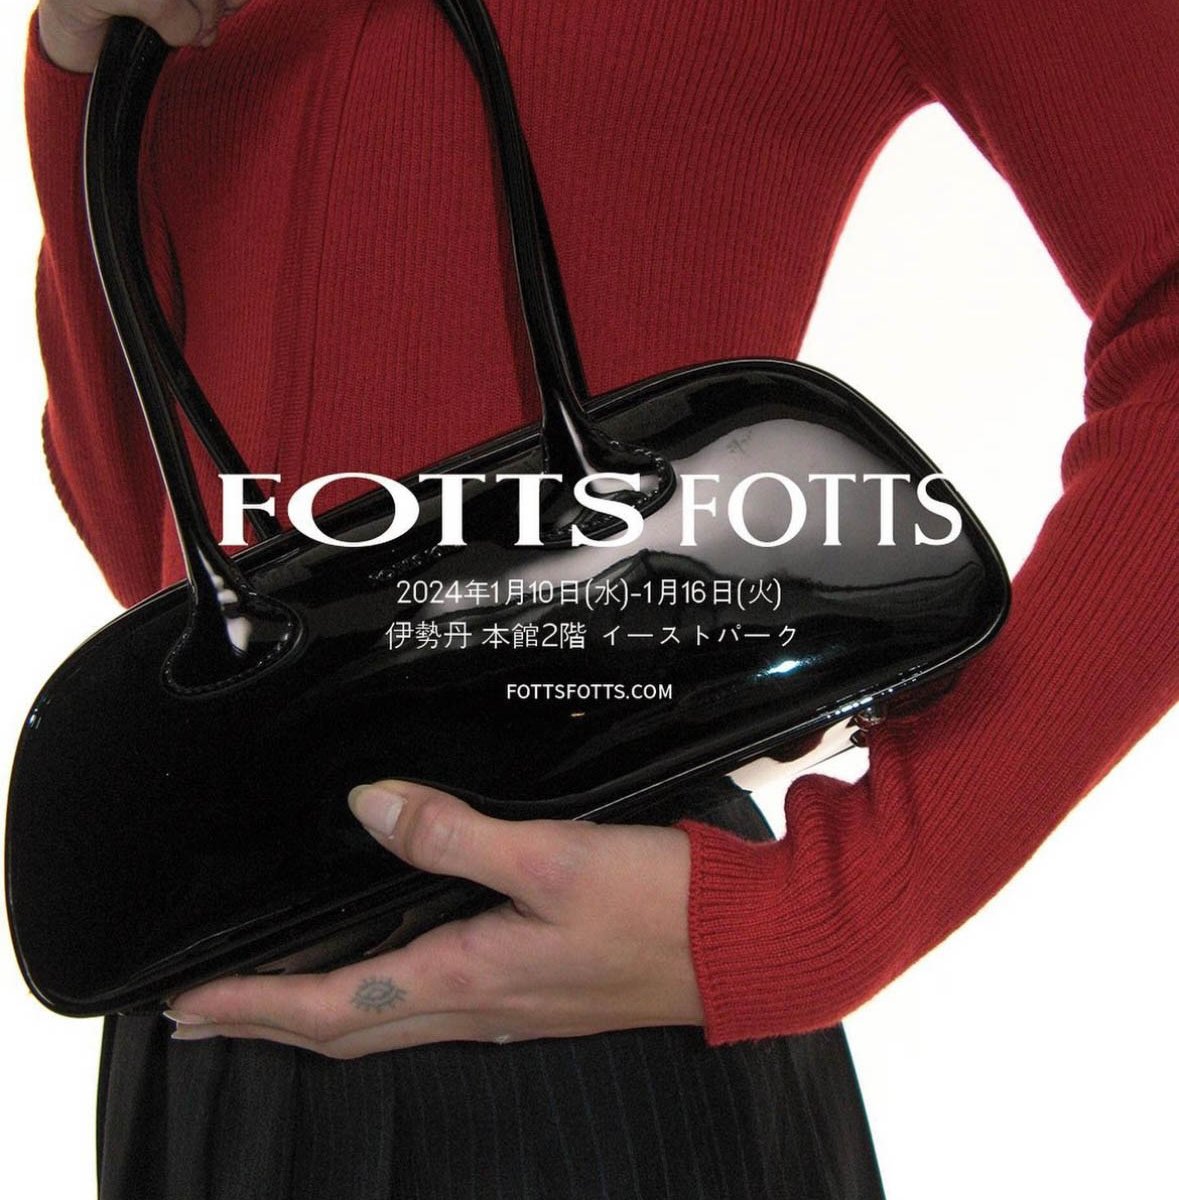 ハンドバッグが人気の韓国発ブランド「FOTTS FOTTS」が日本初